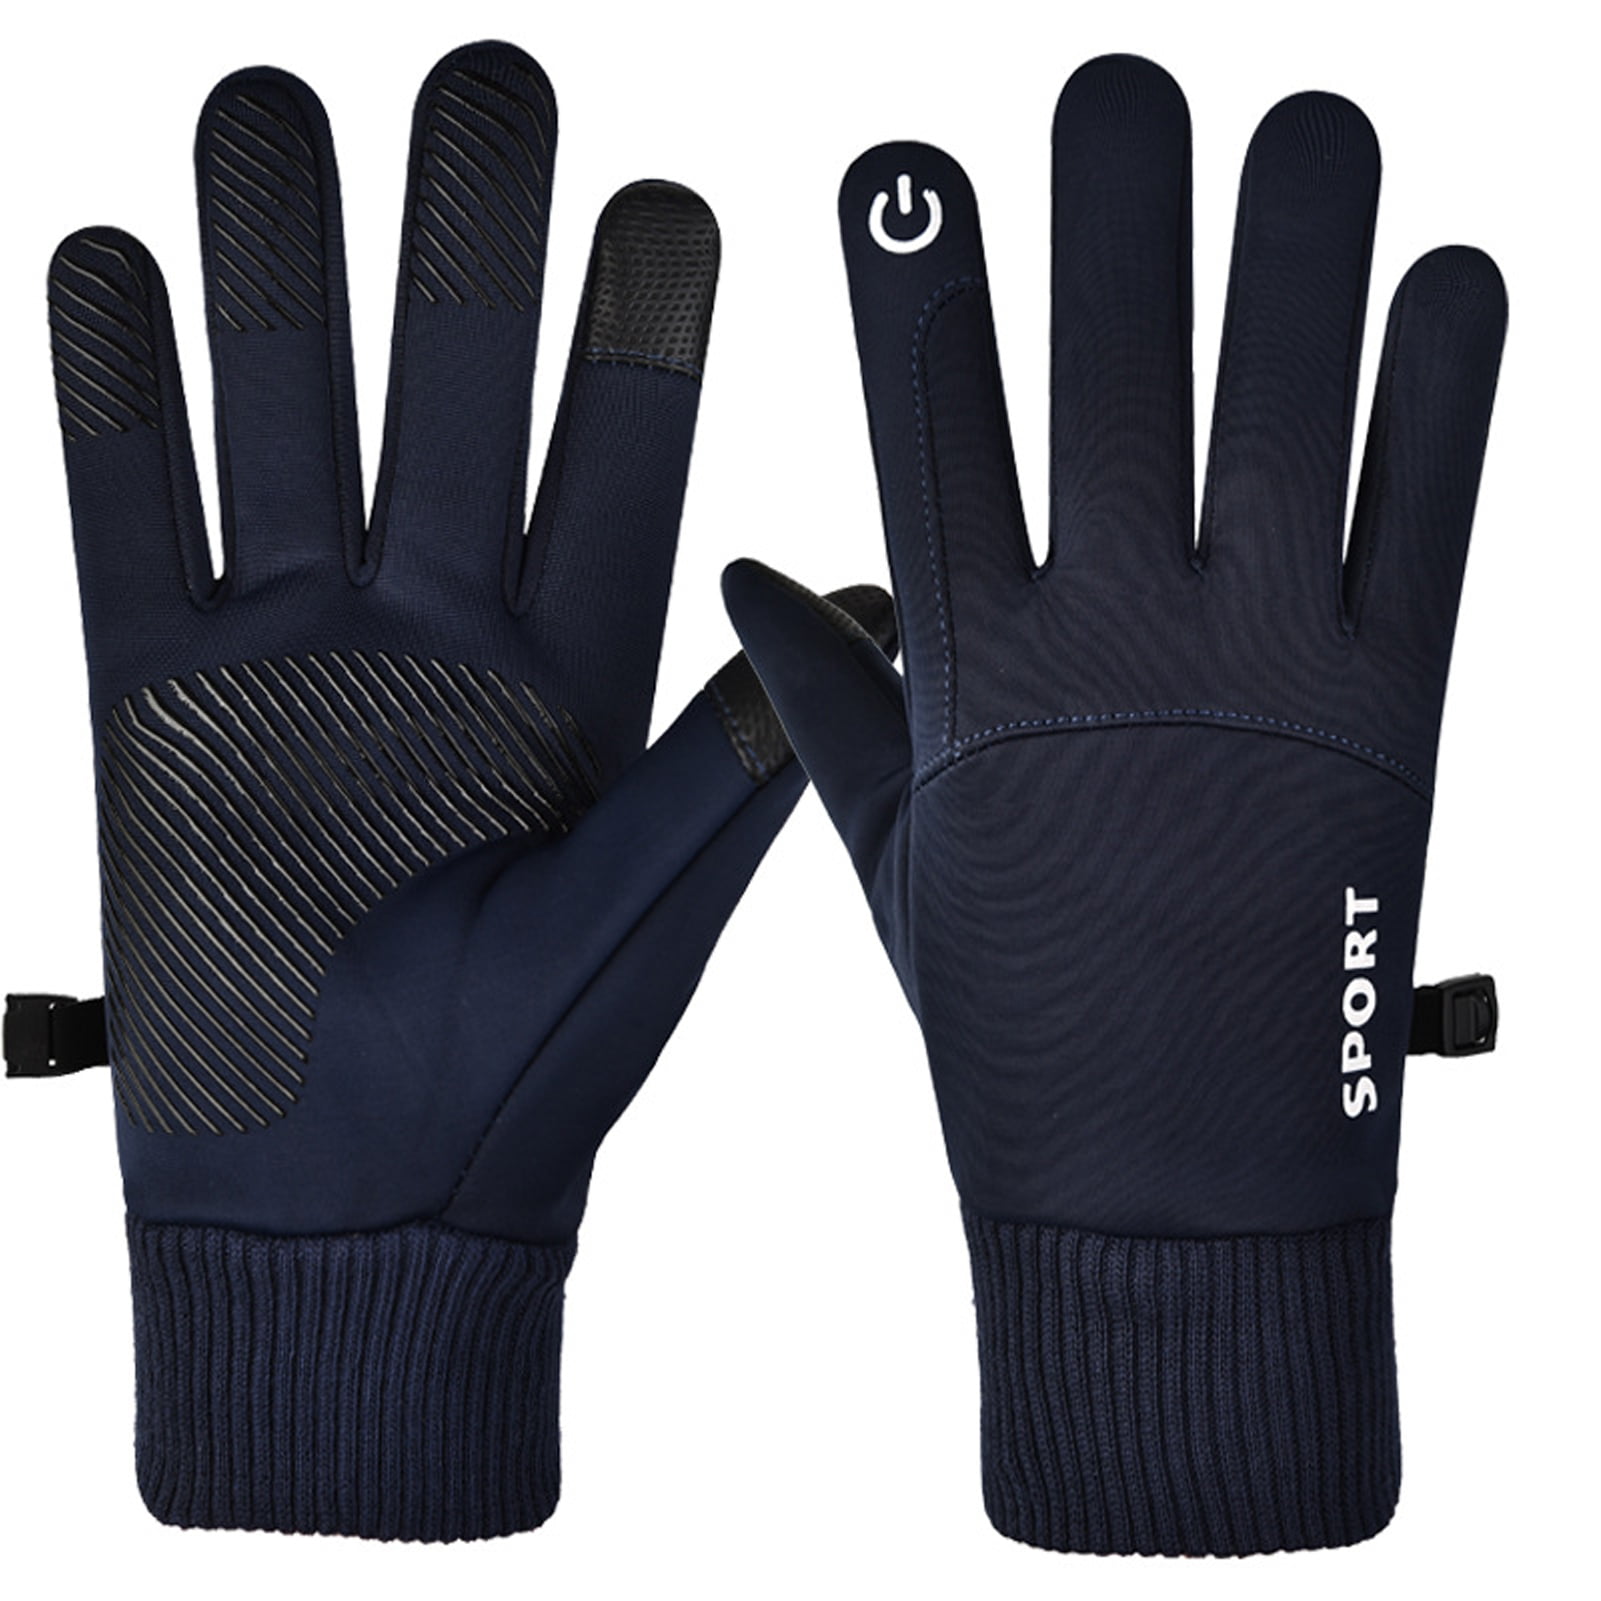 WMOSS Work Gloves Touch Screen Flex Grip Winter Gloves Warm Fleece Driving  Gloves Windproof Outdoor For Men Women,Black (Small)